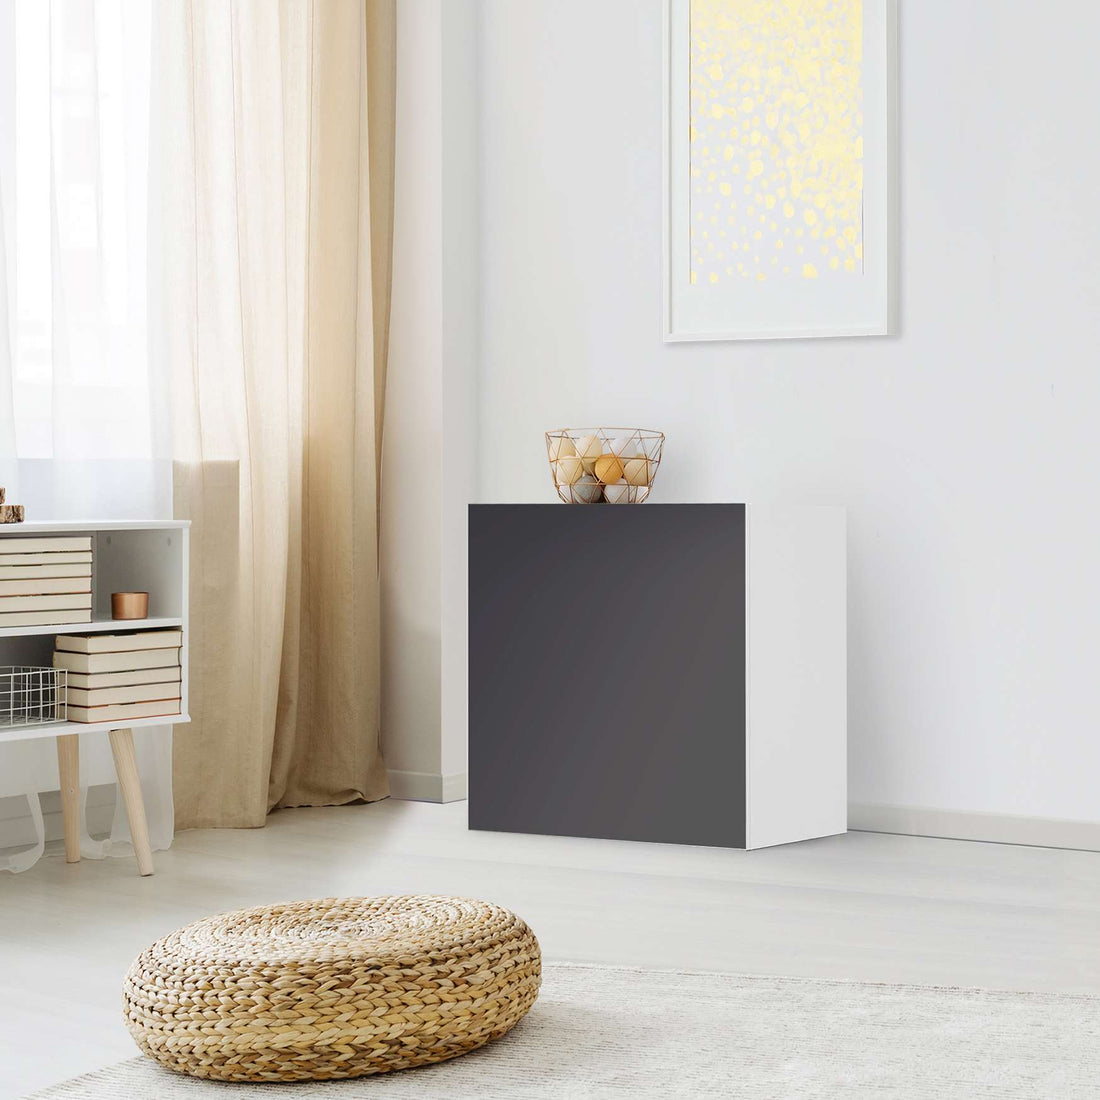 Klebefolie für Möbel Grau Dark - IKEA Besta Regal 1 Türe - Wohnzimmer